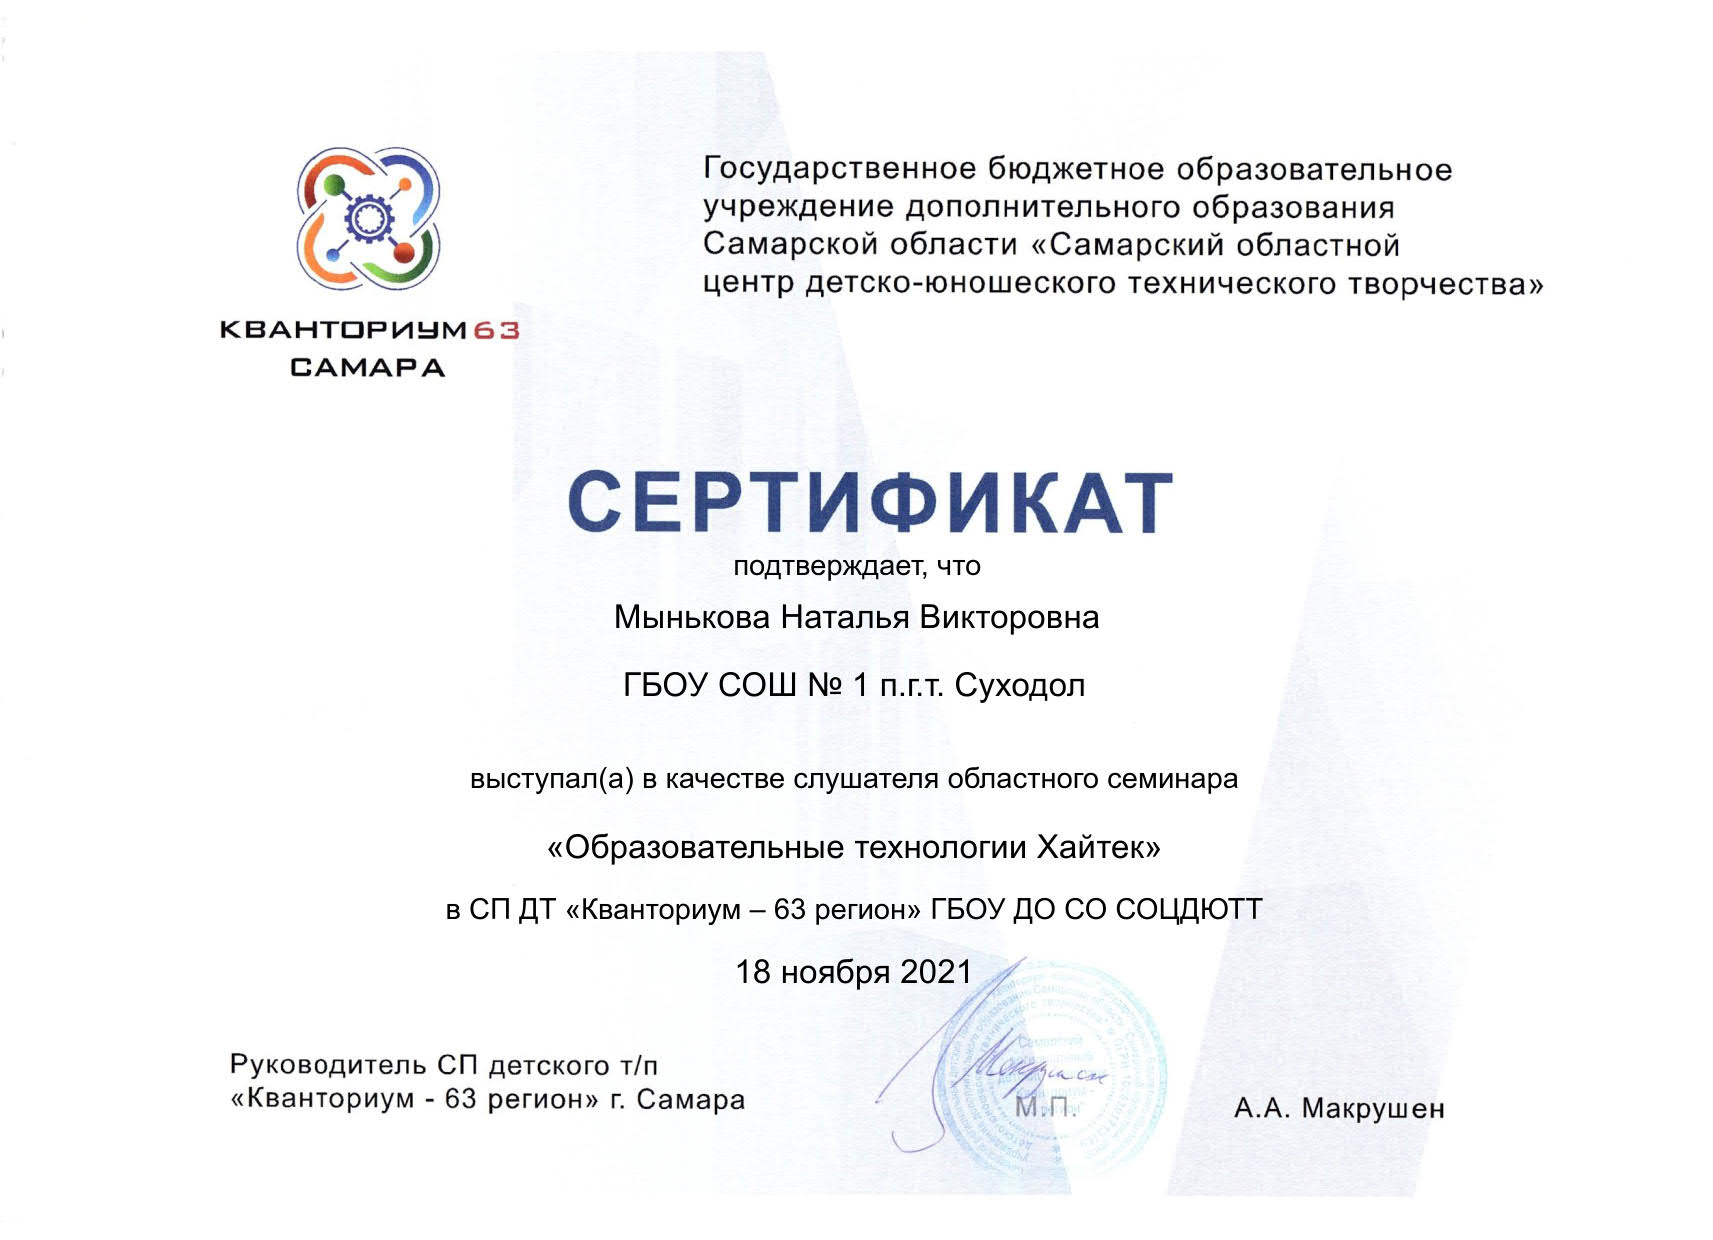 Сертификат Кванториум 63 Мынькова